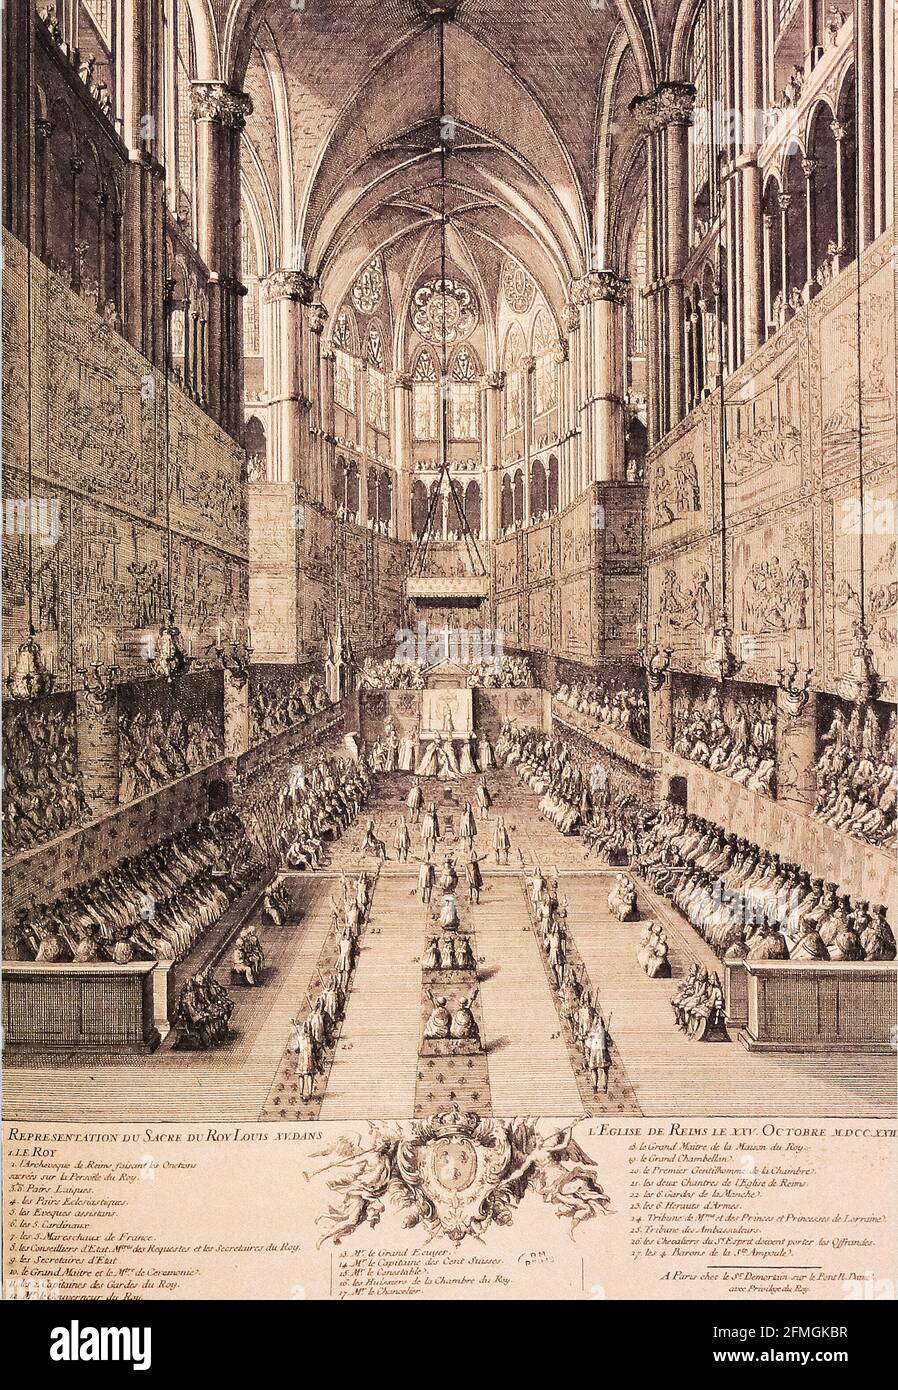 Krönung von Ludwig XV. In Reims - Représentation du sacre Du roi Louis XV dans l'église de Reims le 25 Oktobre 1722 Stockfoto